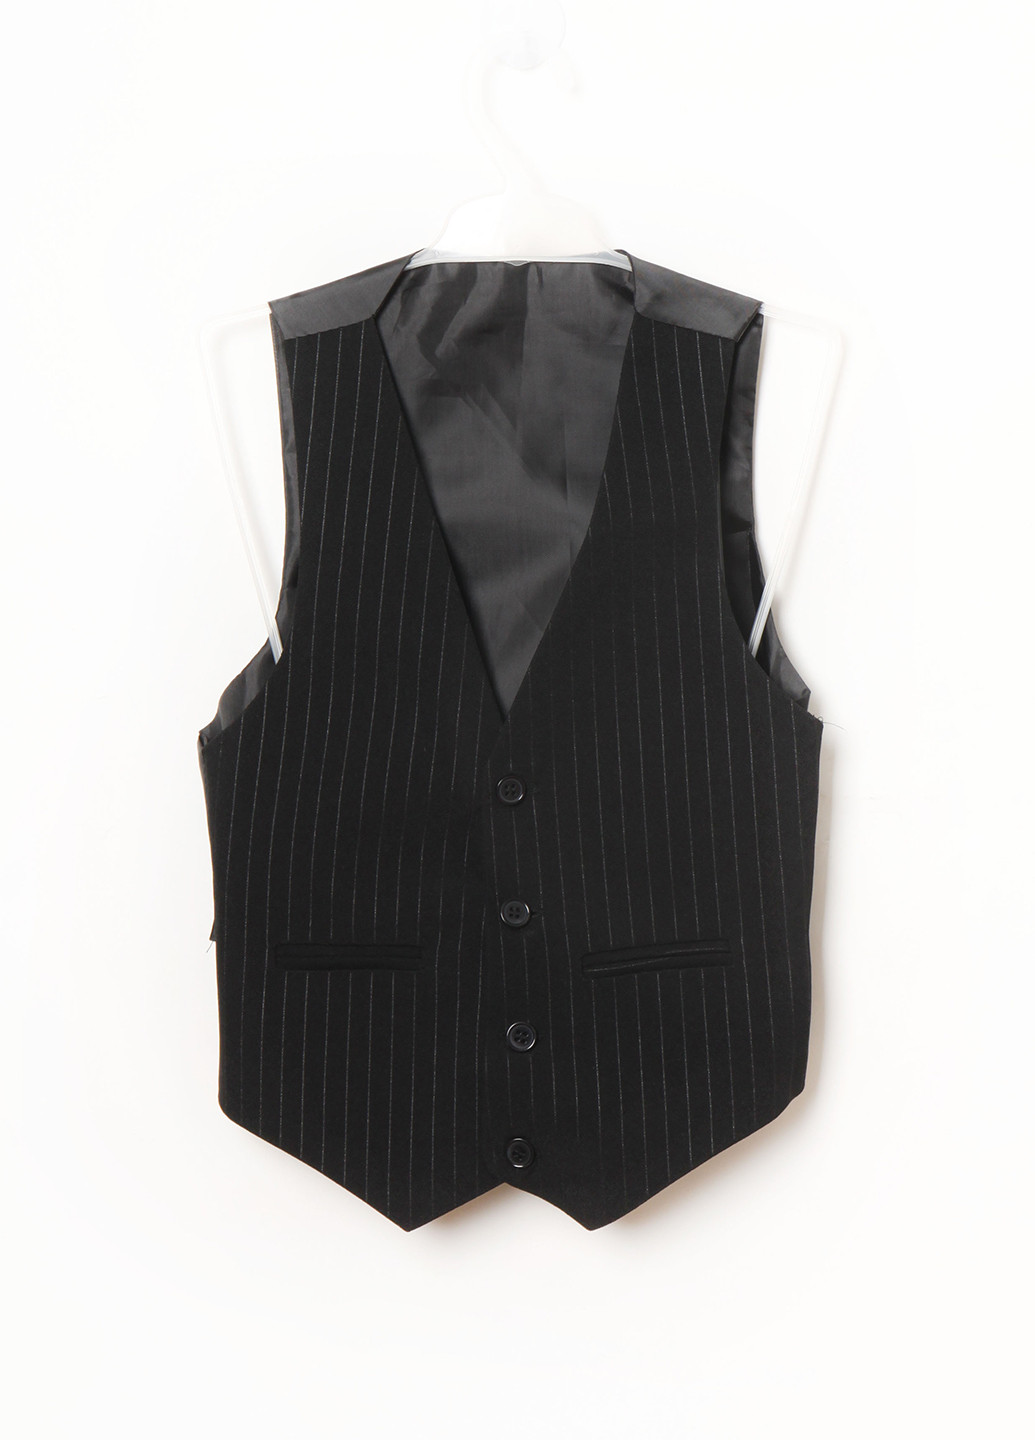 Чорний демісезонний костюм (піджак, жилет, штани) трійка Mtp